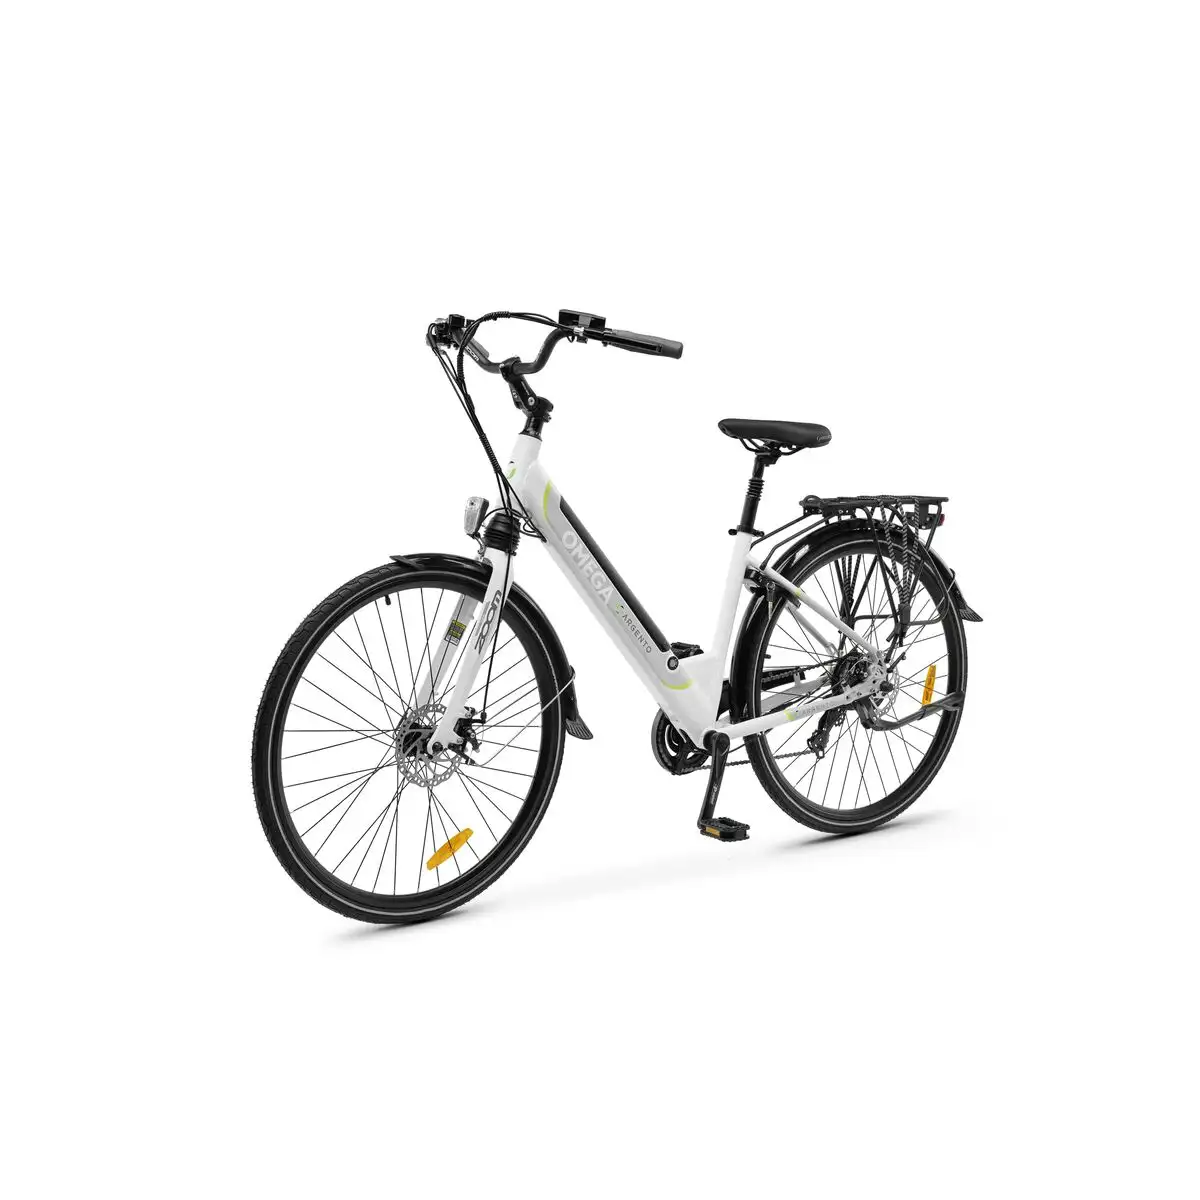 Velo electrique argento bike omega bianca 2021 27 5 25 km h_7836. DIAYTAR SENEGAL - Votre Destination pour un Shopping Inoubliable. Naviguez à travers notre catalogue et choisissez des produits qui vous marquent par leur originalité.